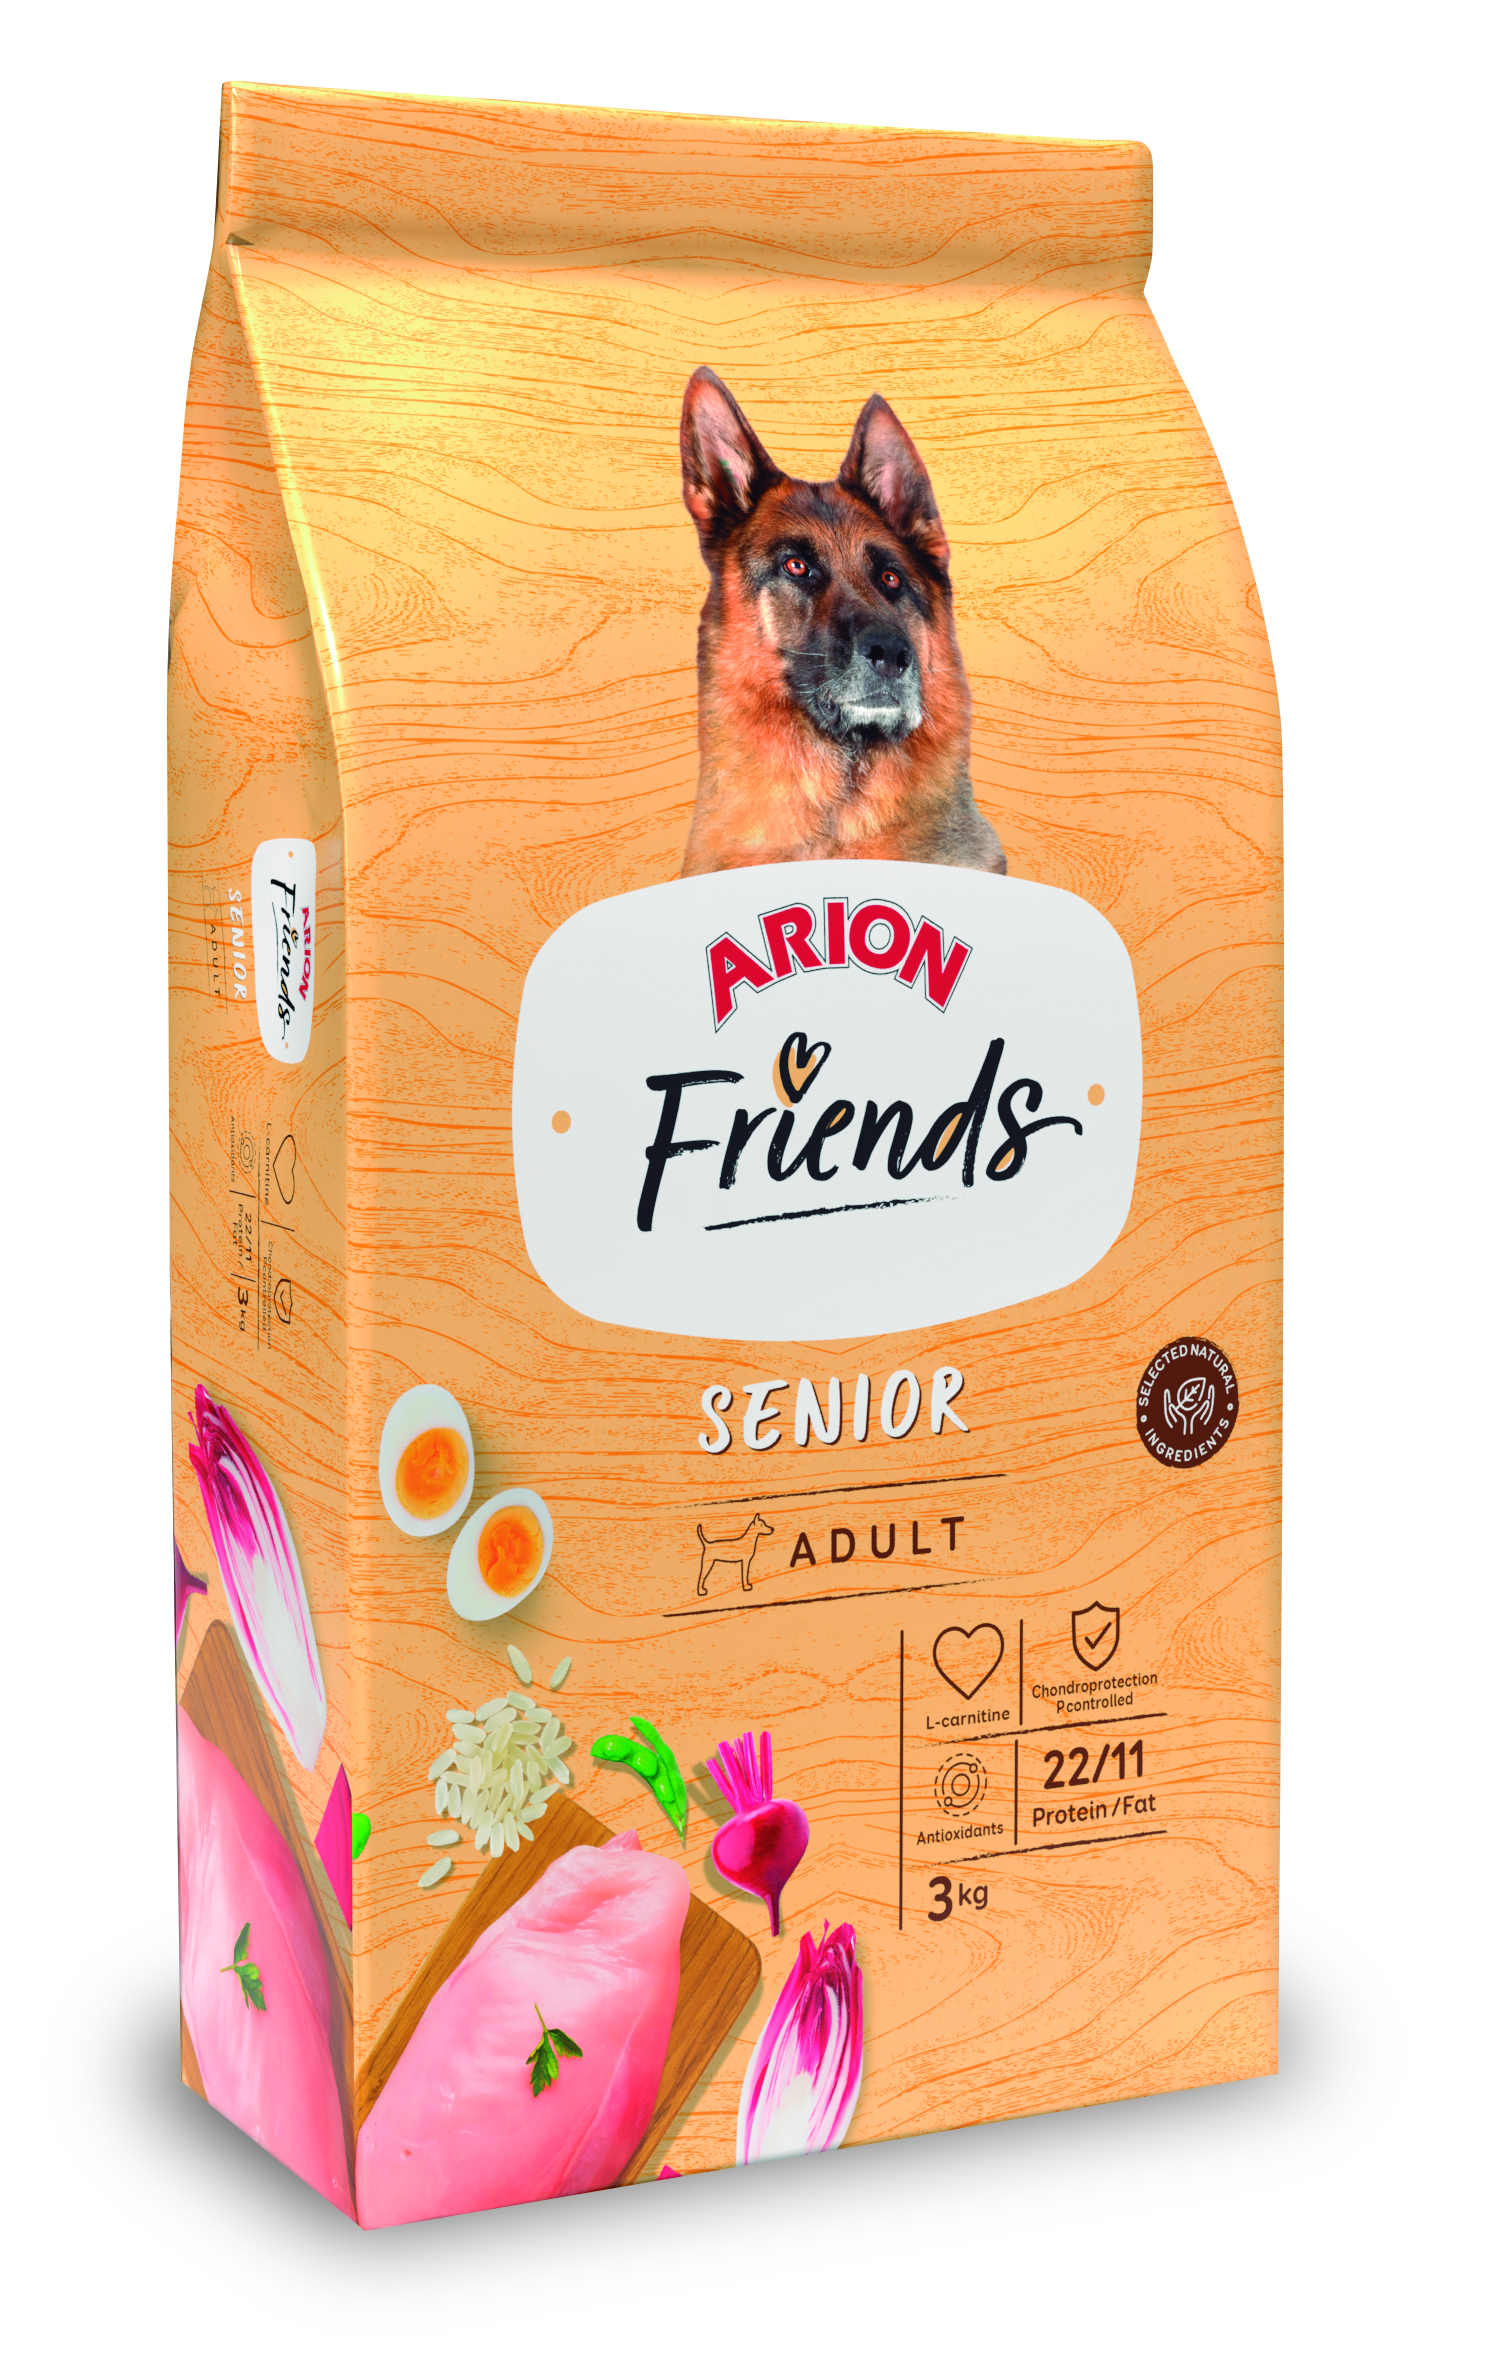 Arion Friends Adult “Senior” – 3Kg